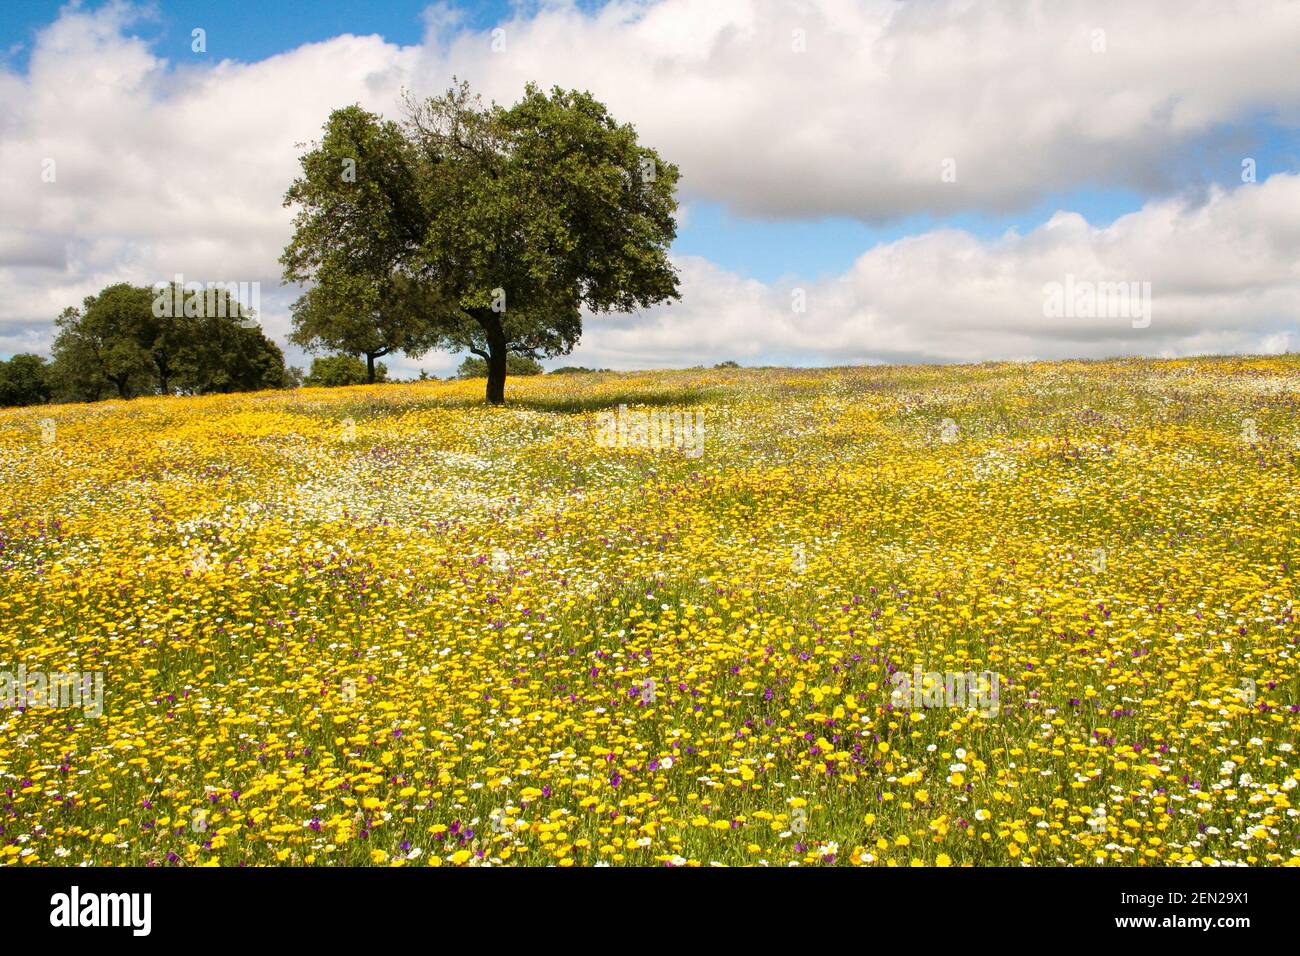 Lecci nella Dehesa con il campo pieno di fiori gialli e margherite Foto Stock